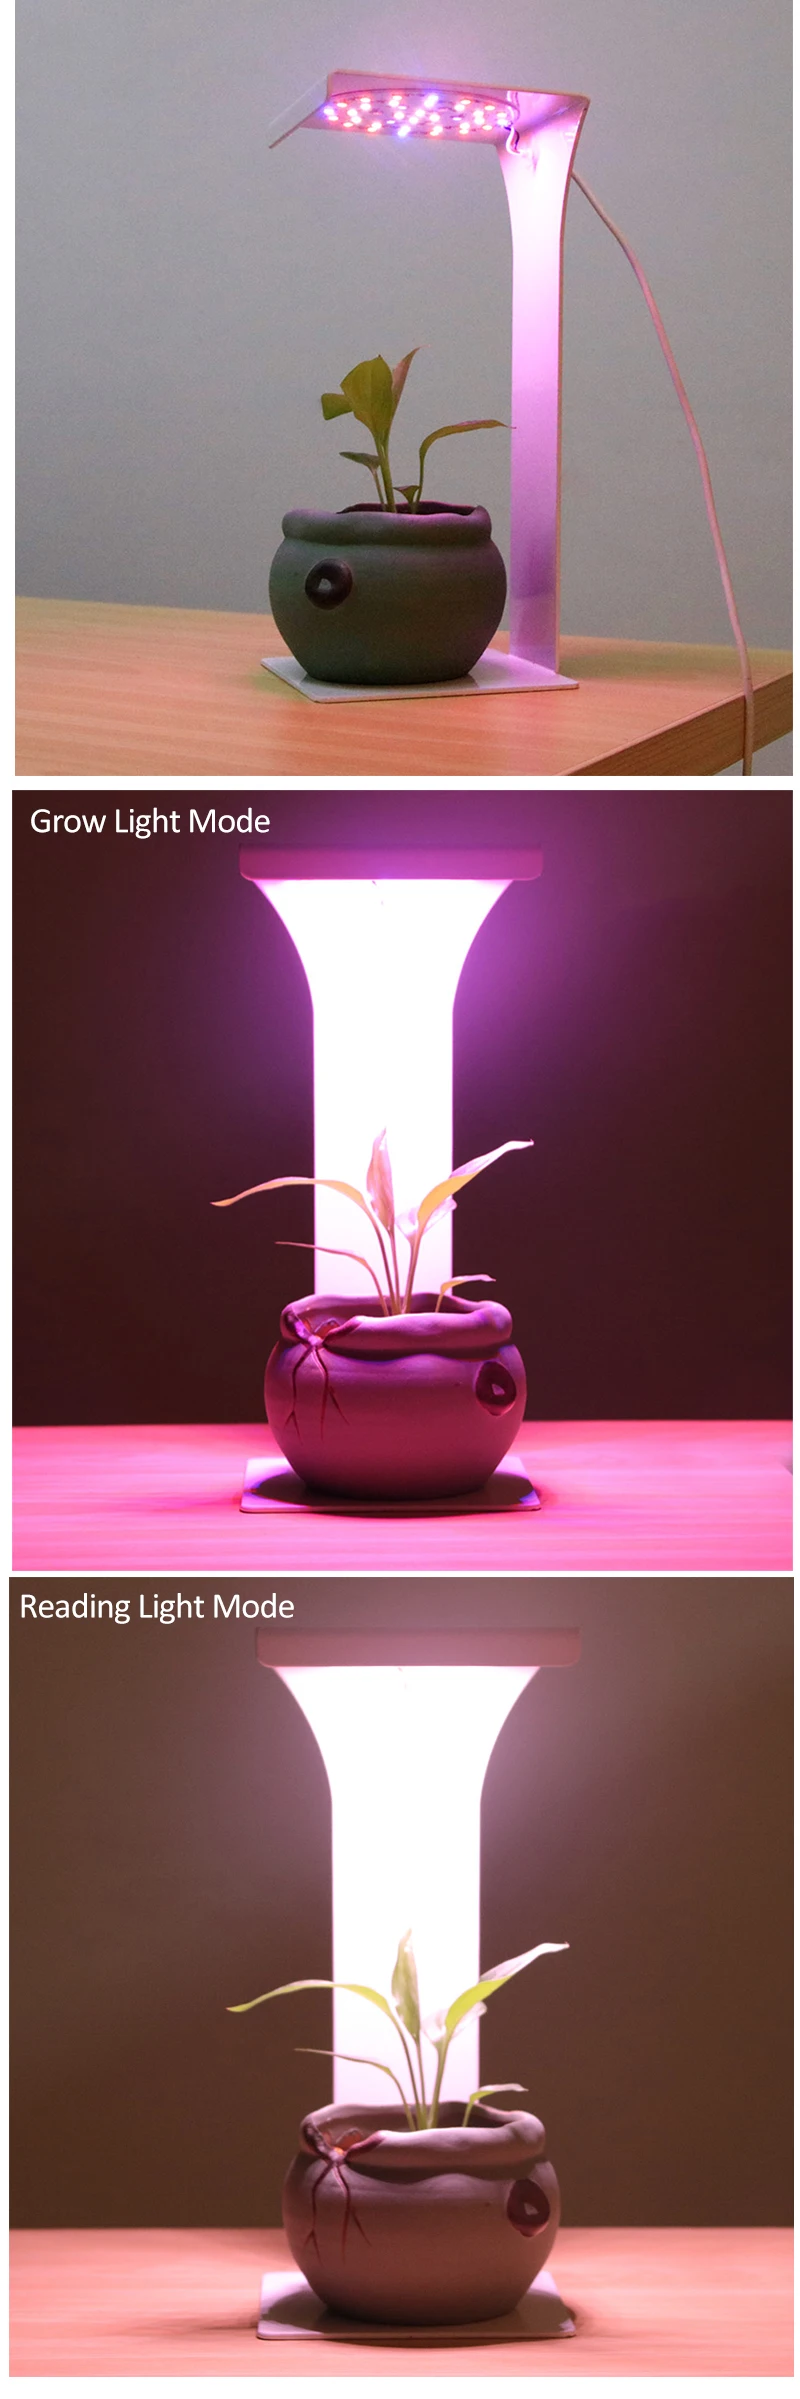 Таймер USB полный спектр светодиодный свет для выращивания растений лампа для чтения в помещении ИК VU Фито Авто Вкл/Выкл настольные лампы для растений